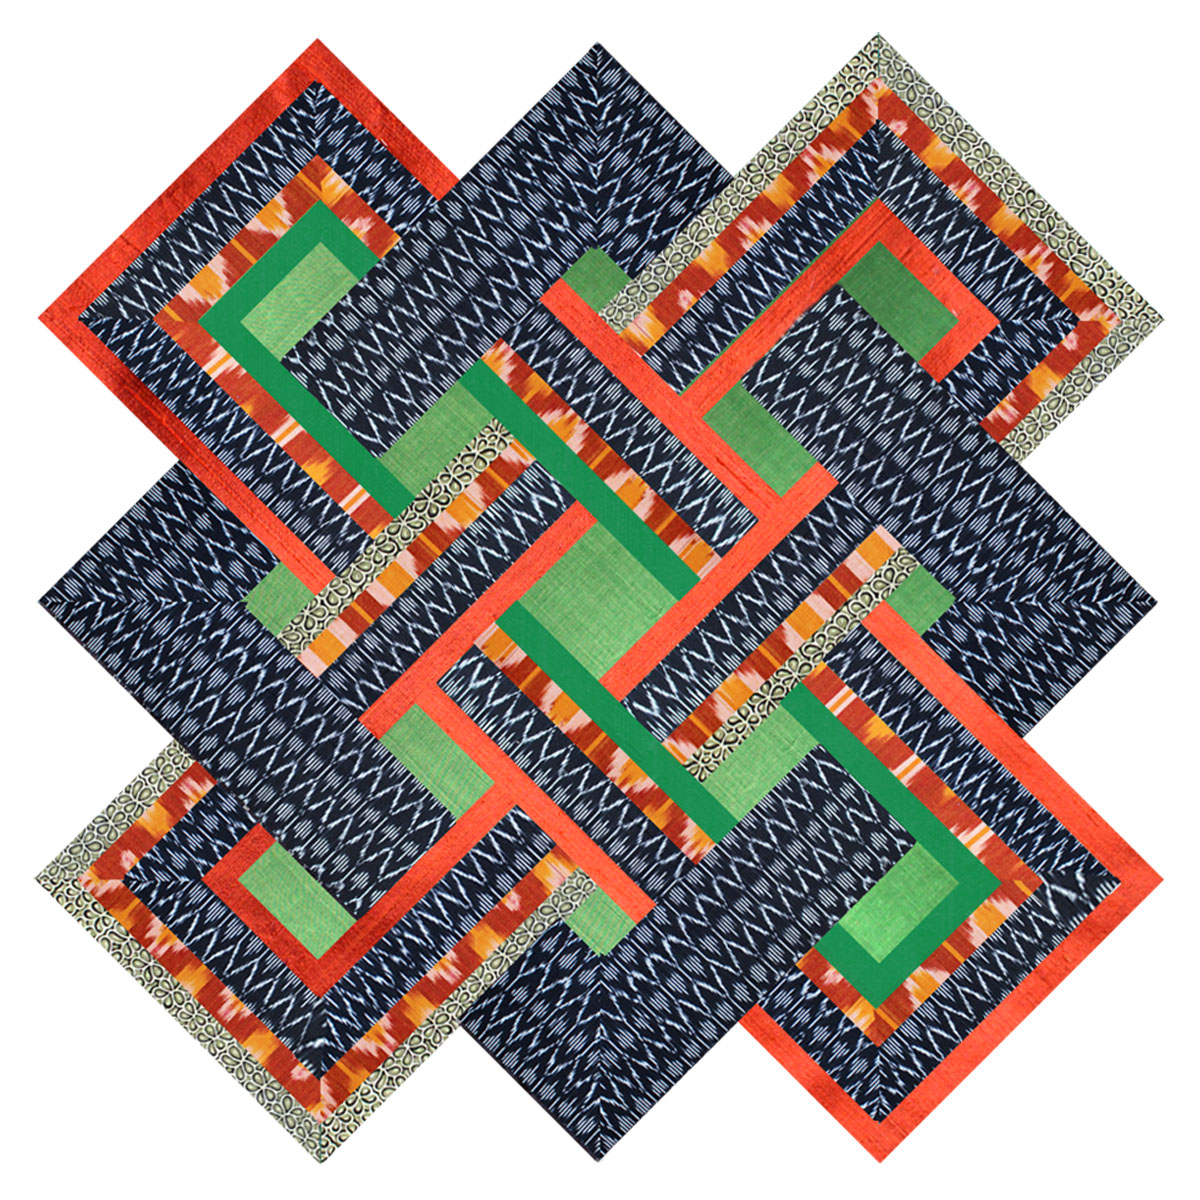 Les Kits de patchwork